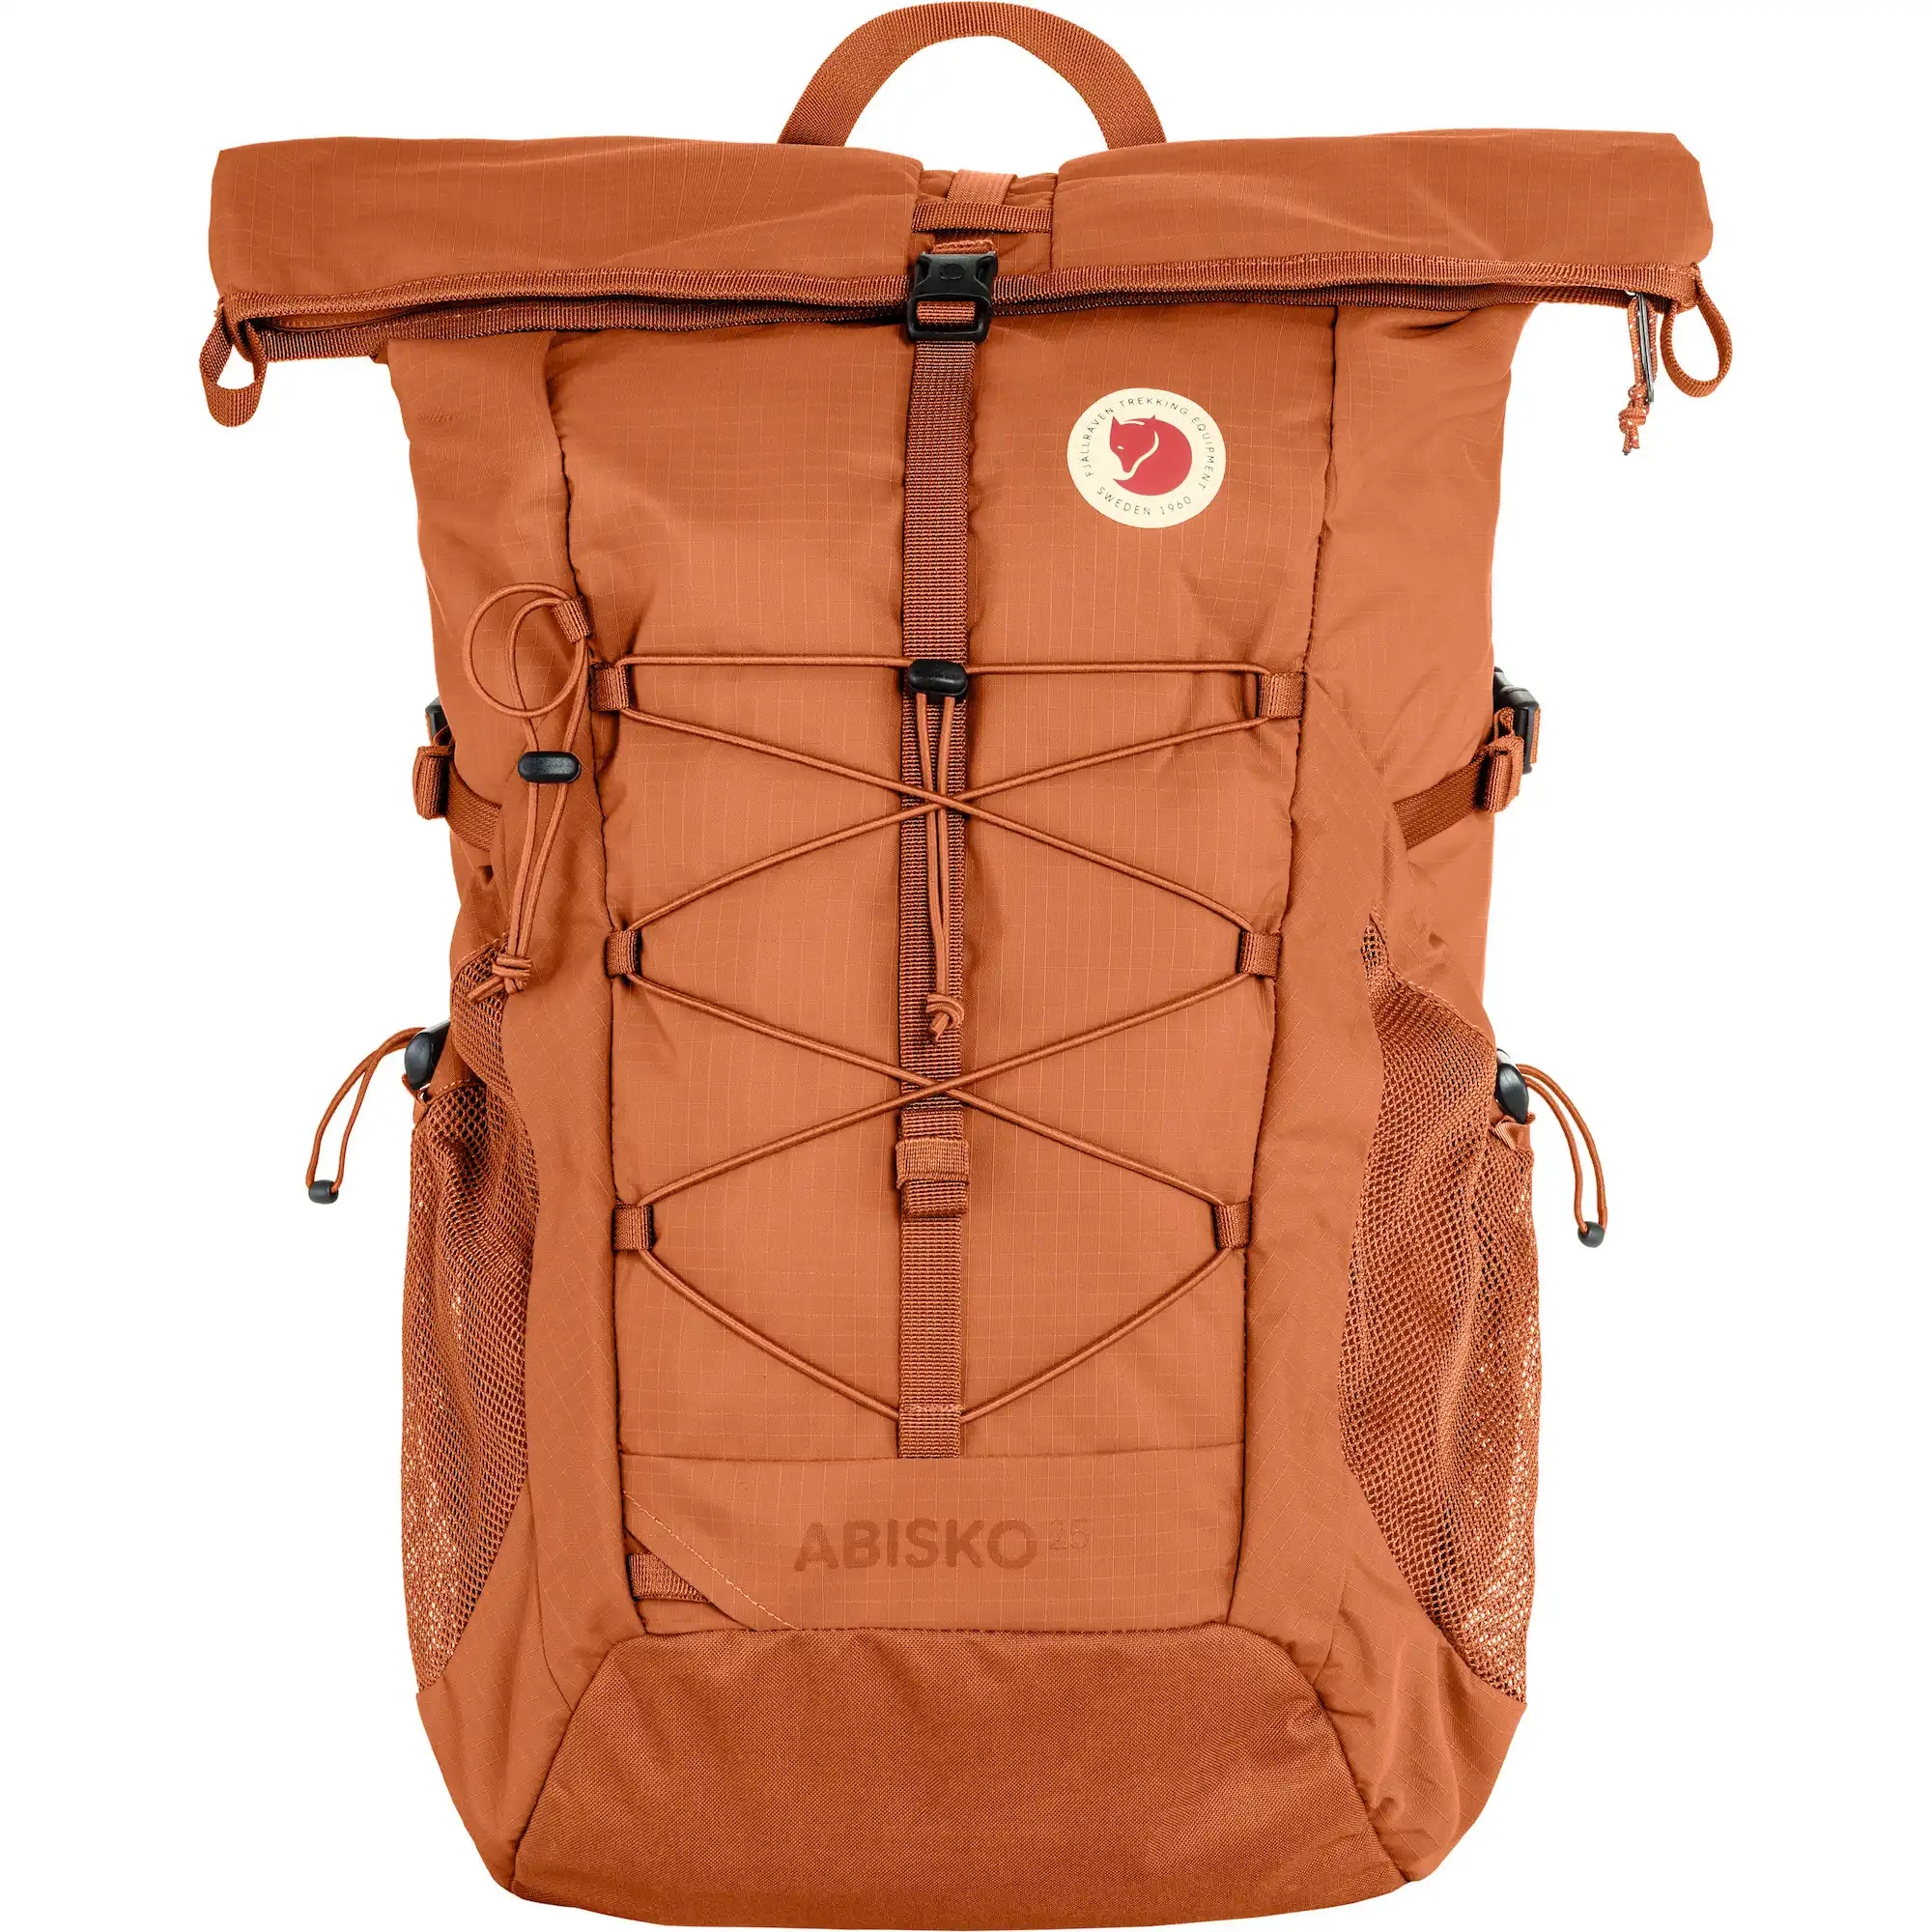 Abisko Hike Foldsack Backpack